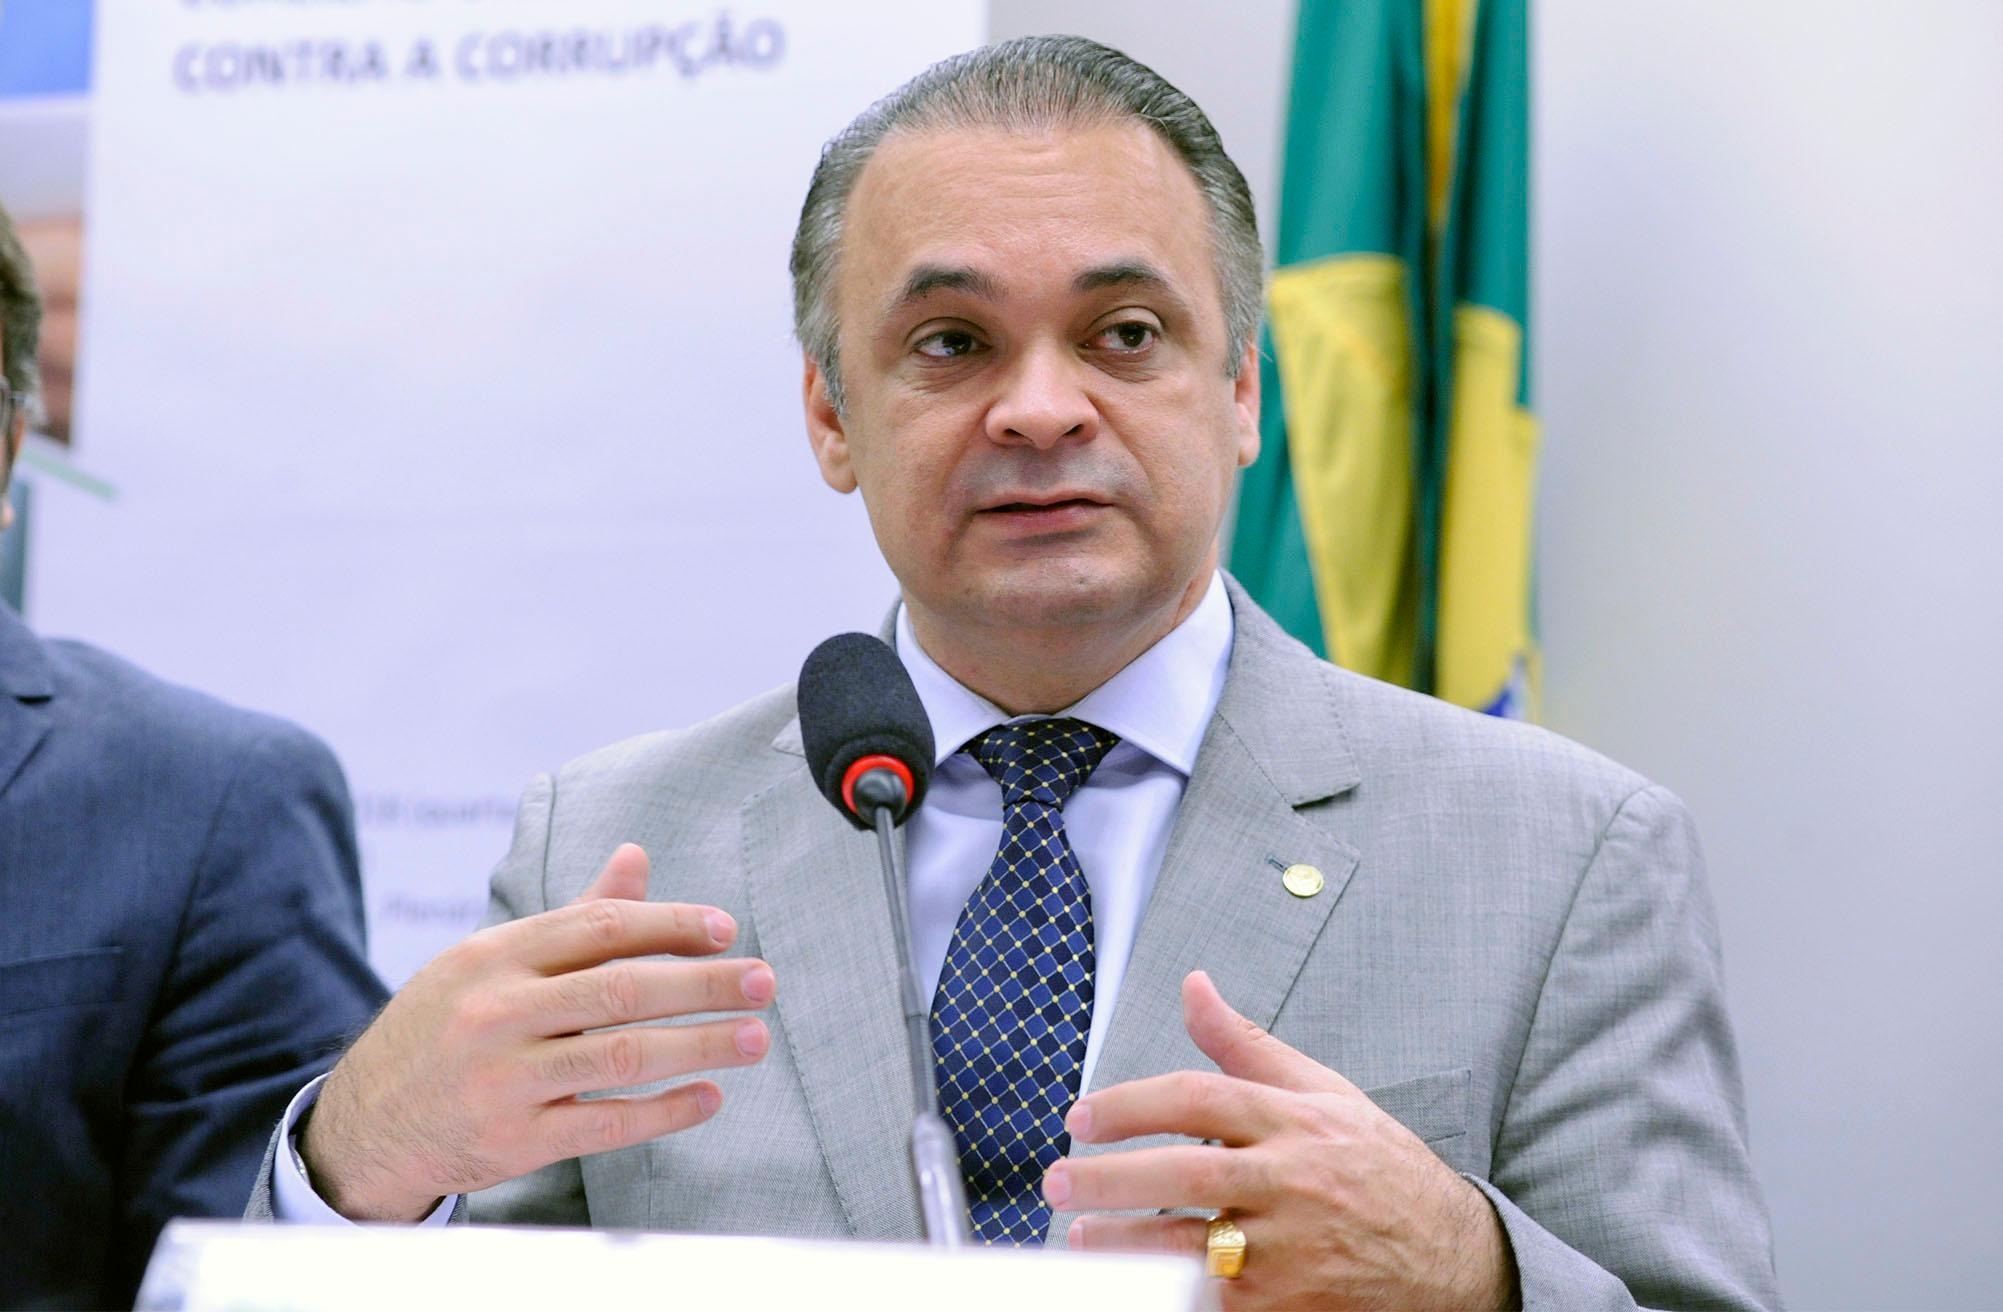 leia Viana/Câmara dos Deputados / Audiência pública sobre o novo pacote de medidas anticorrupção apresentado pela Transparência Internacional Brasil. Dep. Roberto de Lucena (PODE - SP)Roberto de Lucena: 